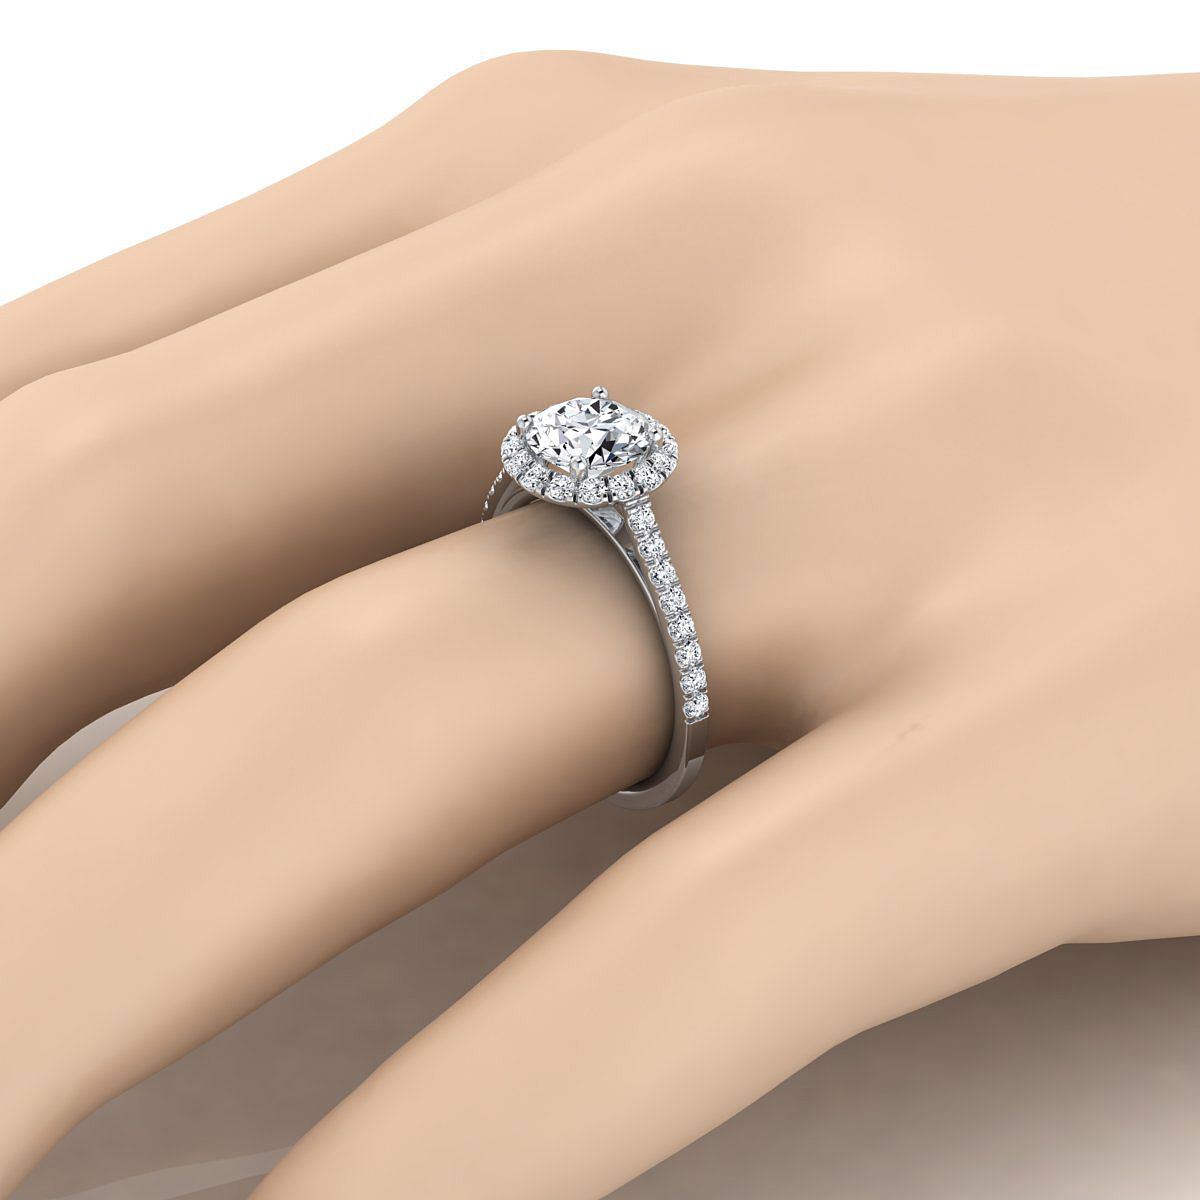 Platinum Round Brilliant Aquamarine Petite Halo French Diamond Pave Engagement Ring -3/8ctw